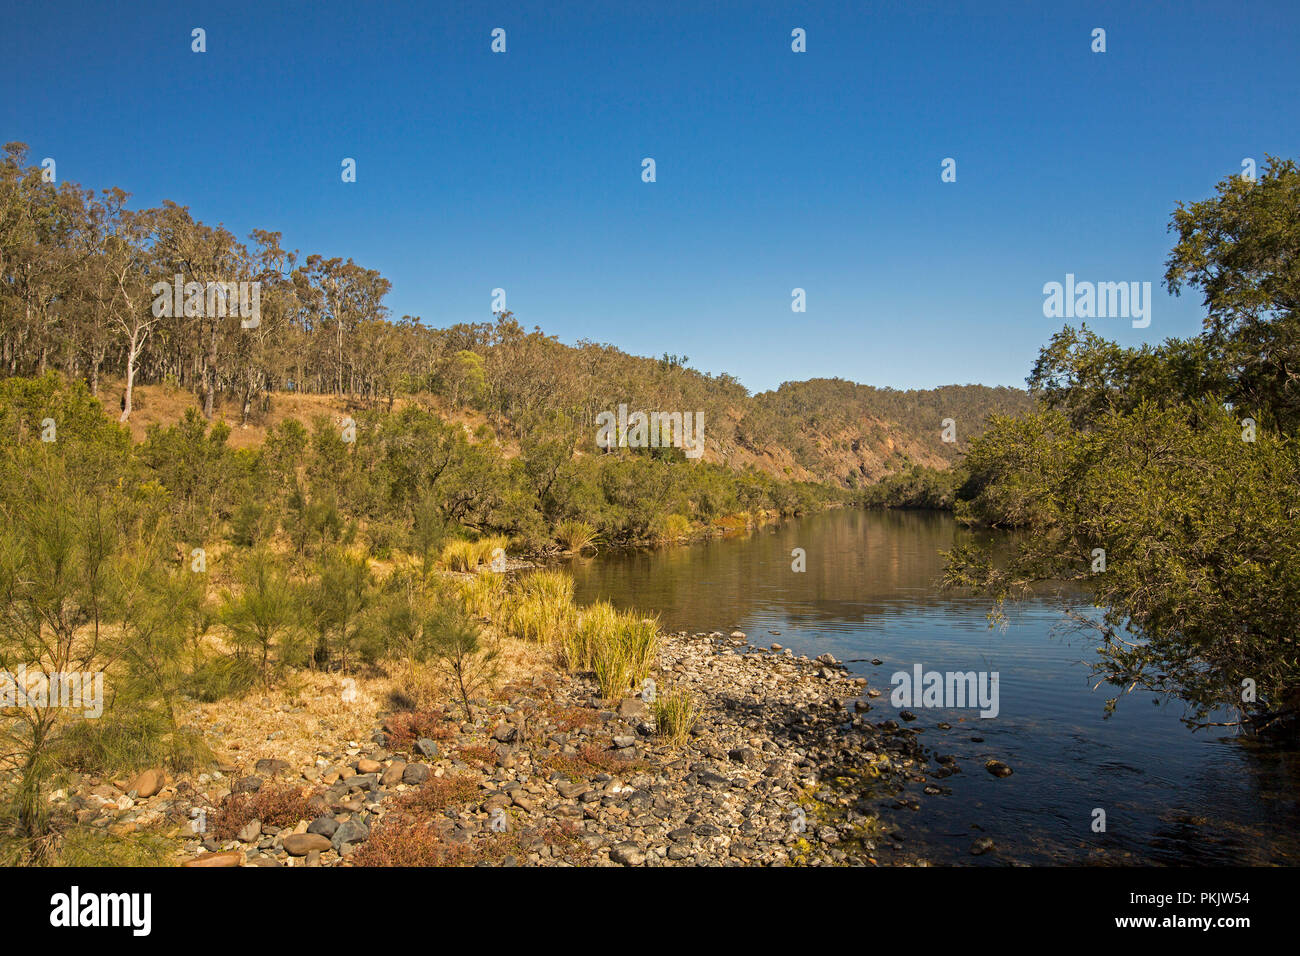 Calme les eaux bleues de la rivière Clarence par tranchage de paysage de collines boisées sous ciel bleu dans le NSW Australie Banque D'Images